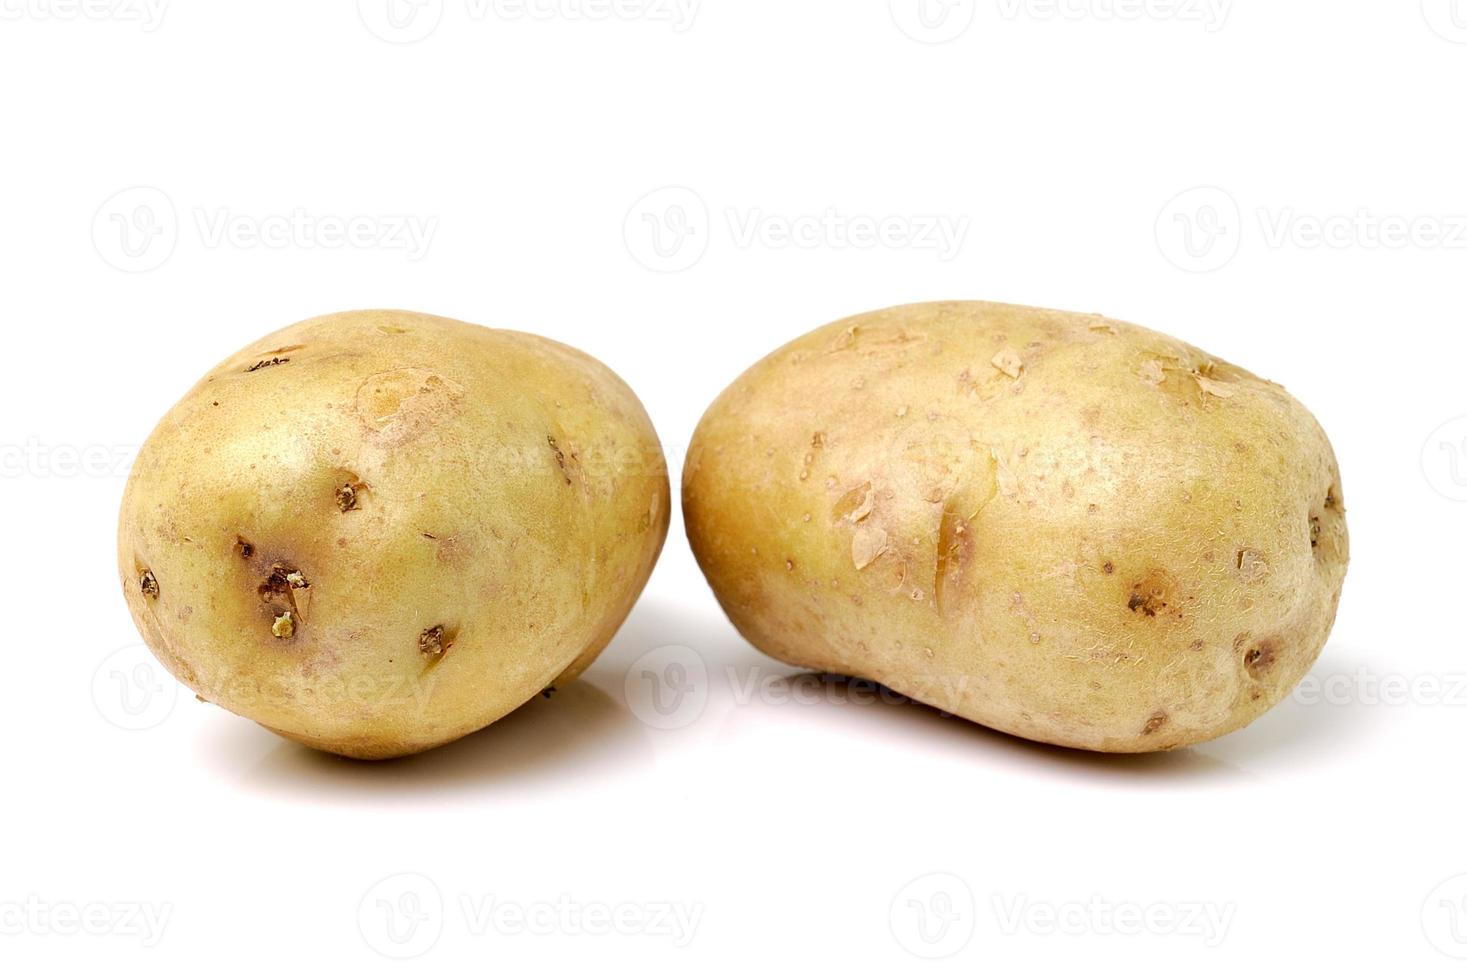 potatis isolerad på vit bakgrund foto